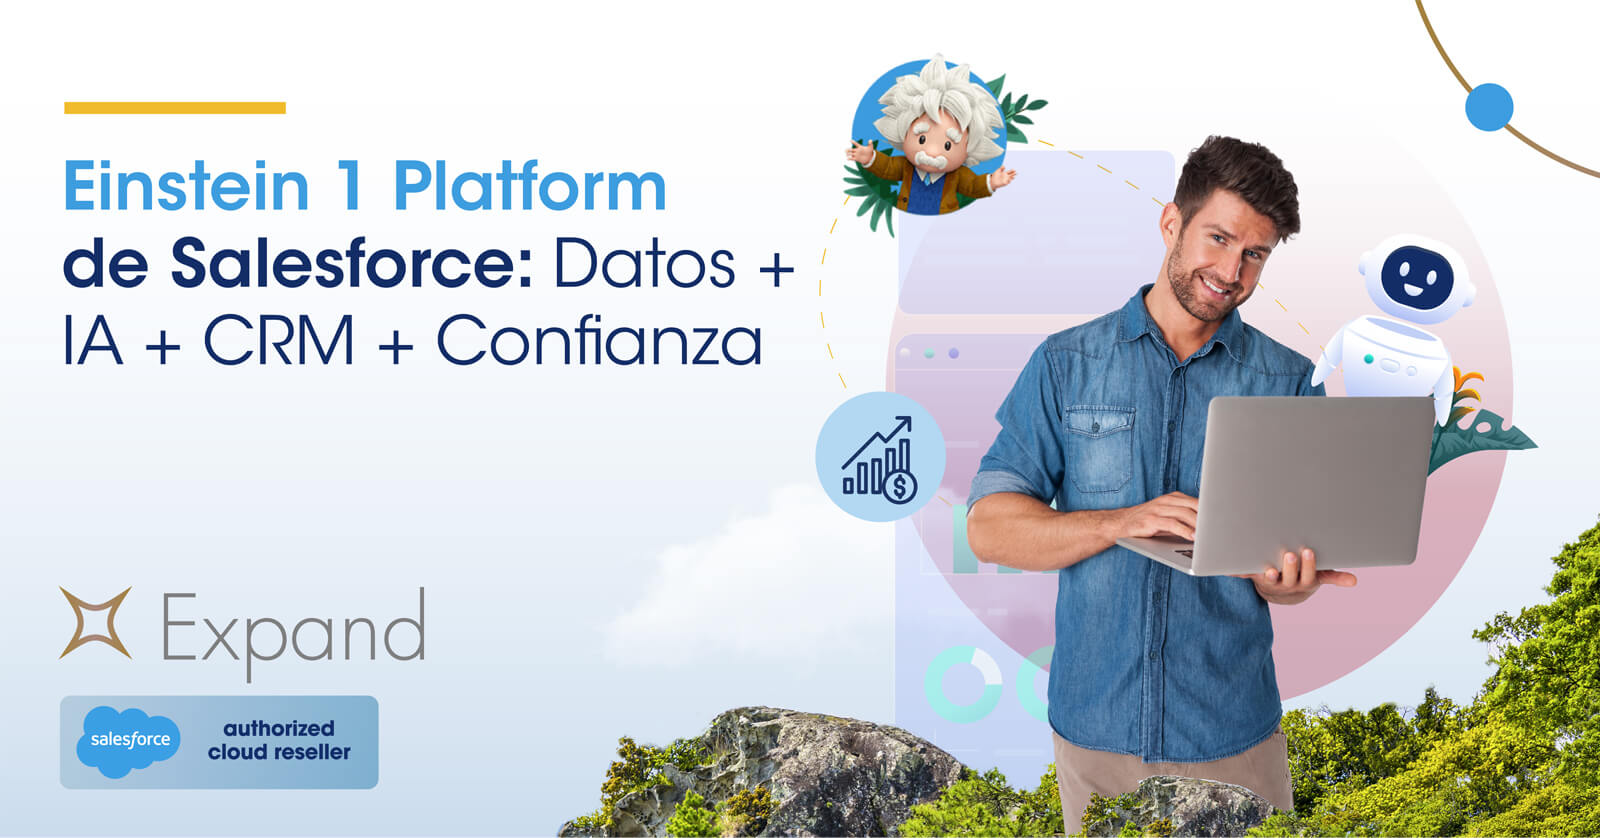 Einstein 1 Platform de Salesforce: Datos + IA + CRM + Confianza